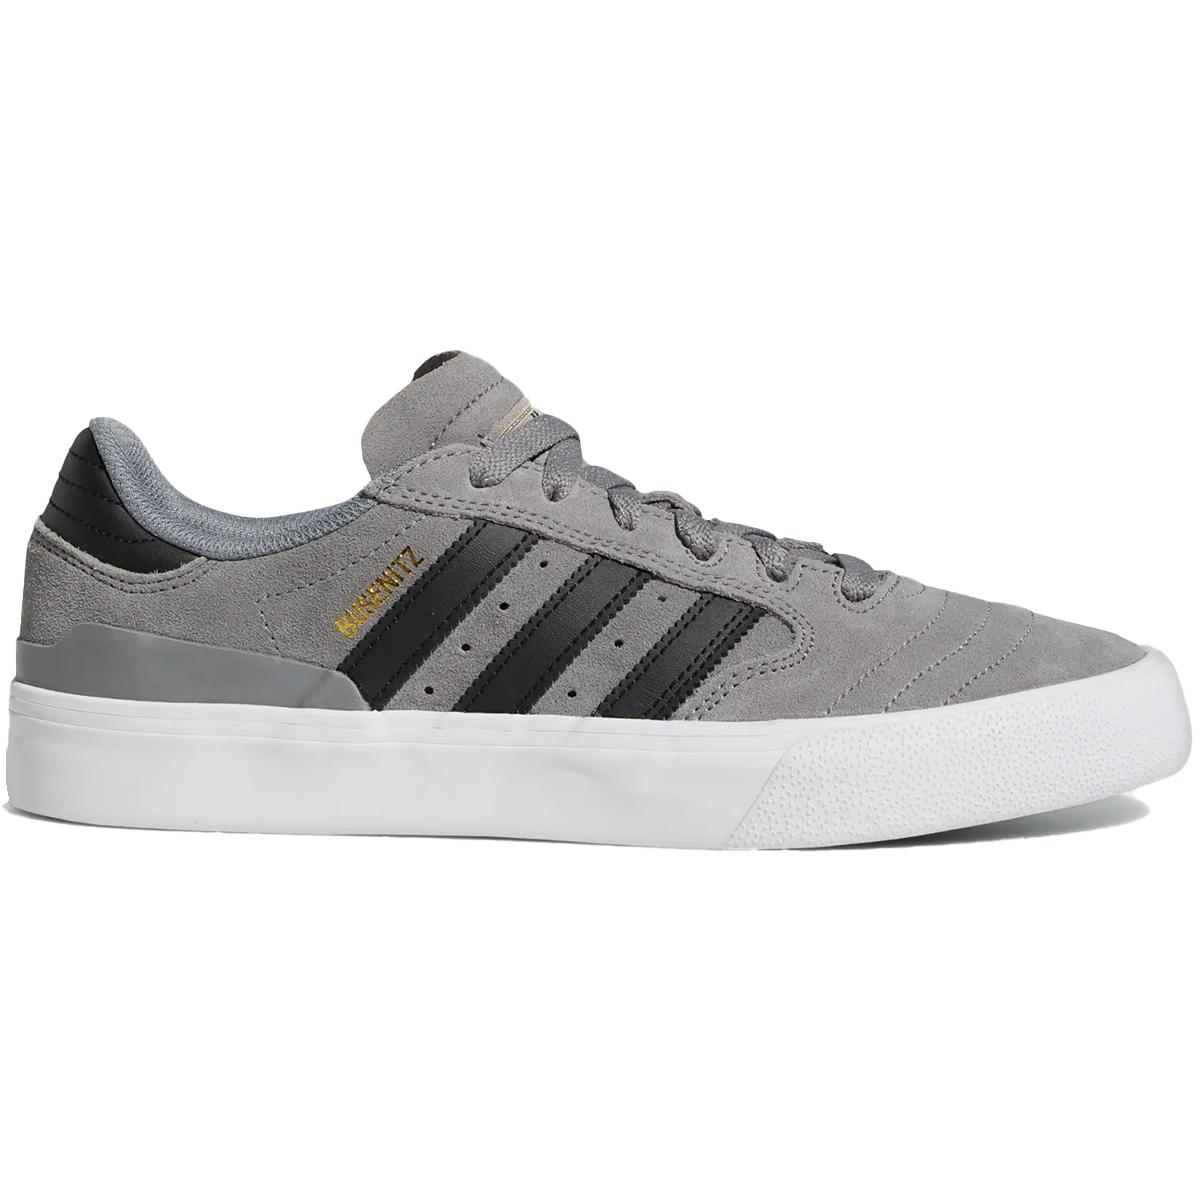 Vulc II Skateboard Shoes, Grey/Black/White